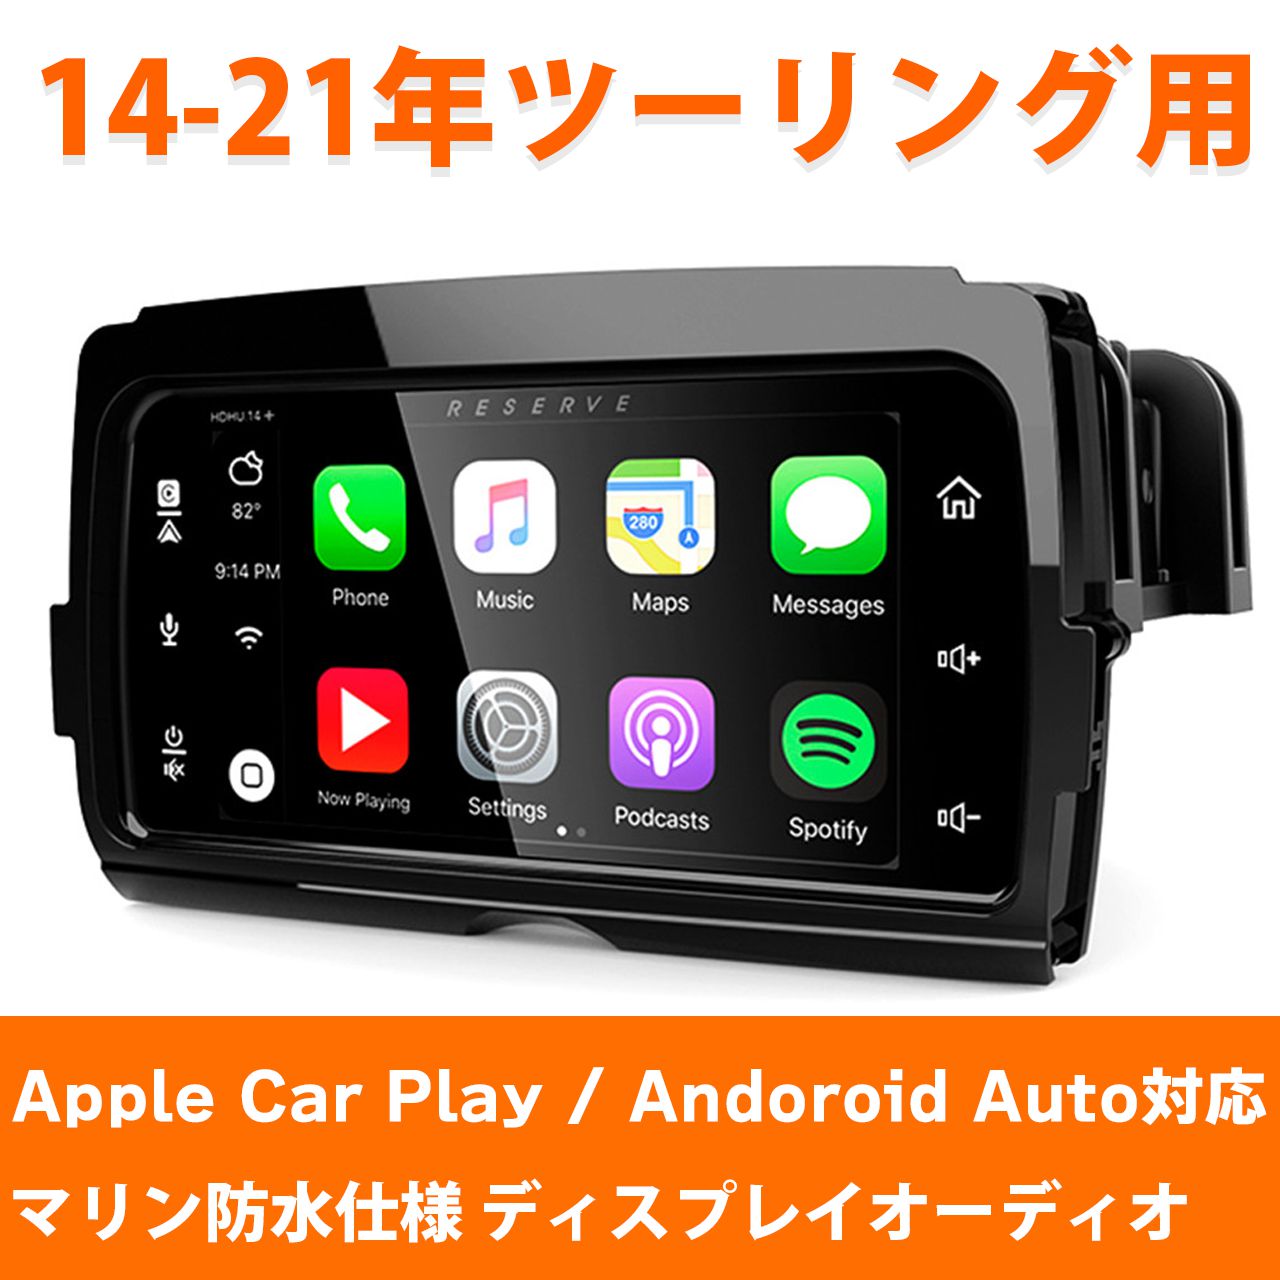 【数量限定販売】LBPS■ストリームサウンドリザーブ HDHU14+ Apple Car play ,Android Auto対応 マリン防水仕様 【14-21年 ツーリング用】